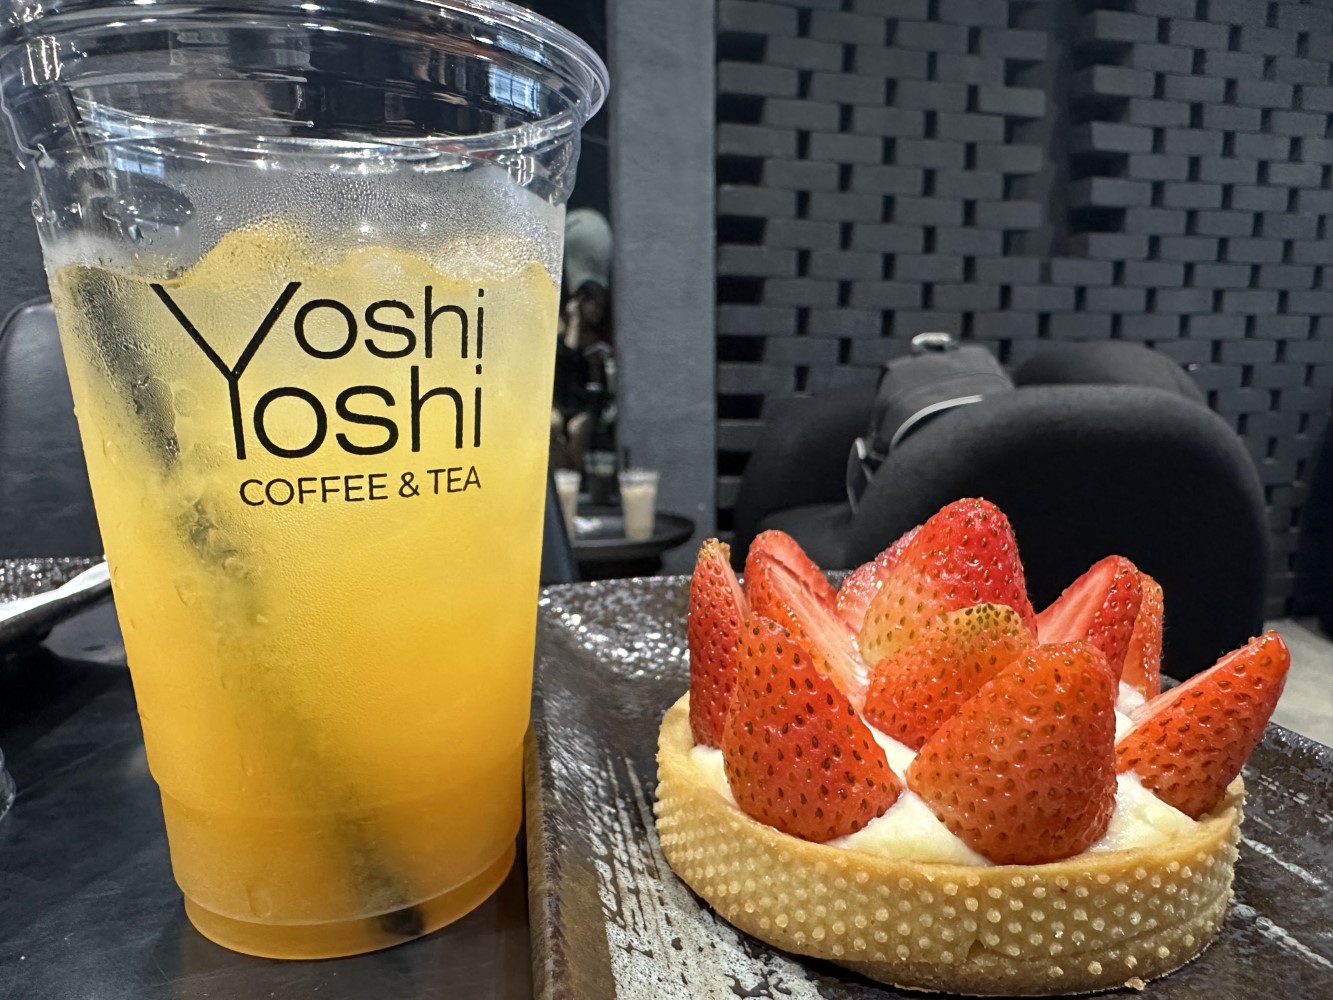 YoshiYoshi Coffee & Tea - 1